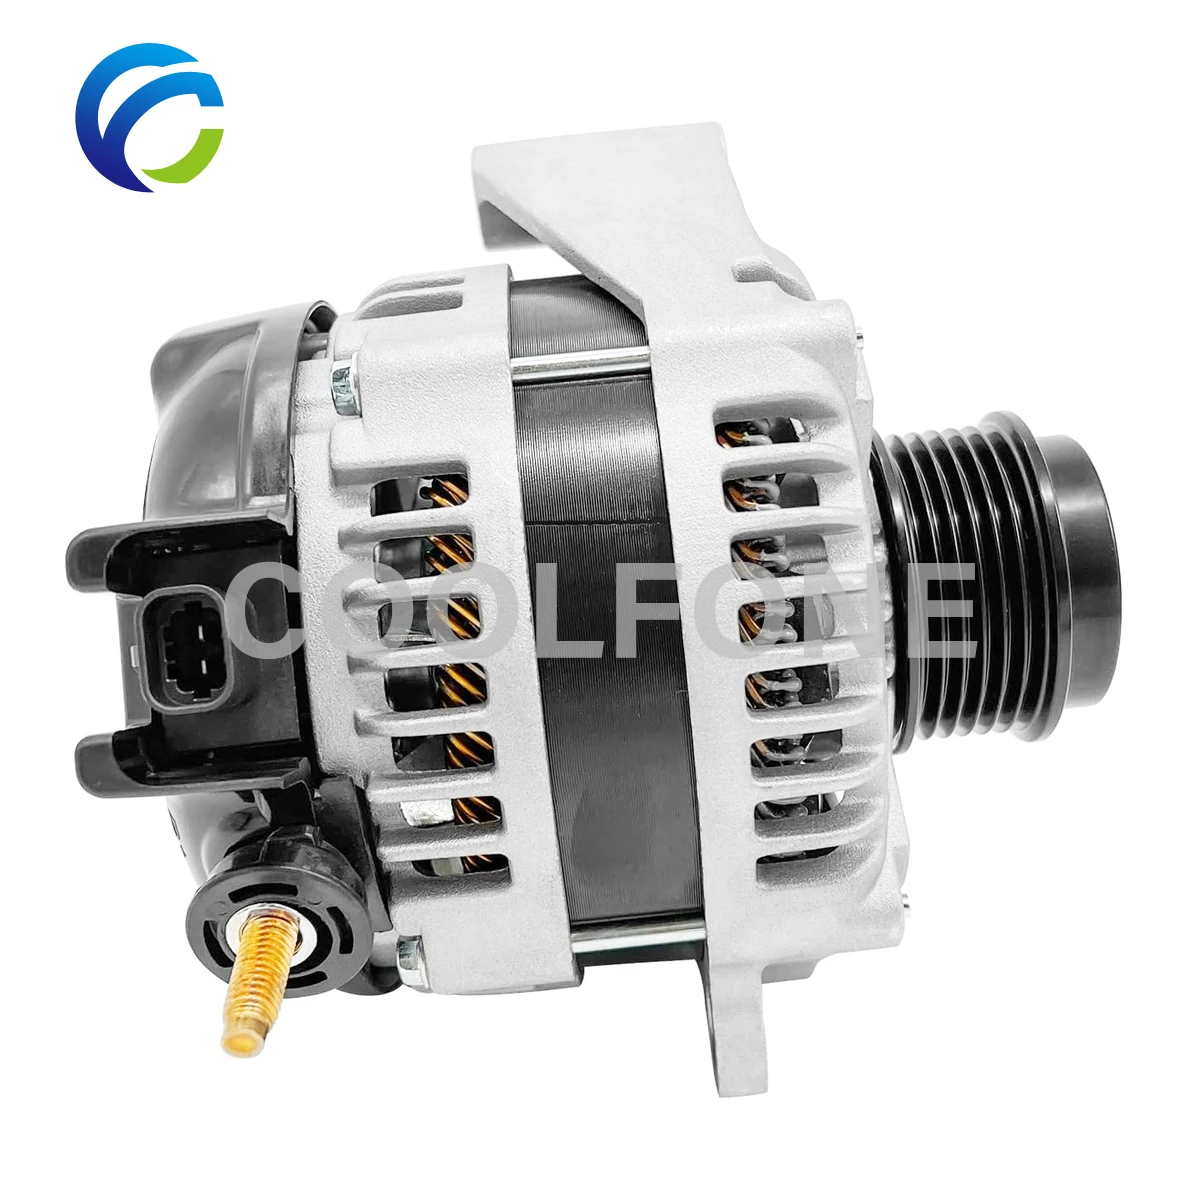 

Coolfone Generator Alternator for CADILLAC ESCALADE GMC Yukon XL Sierra 1500 SAVANA 2500 22747896 23487089 84143543 1042118340